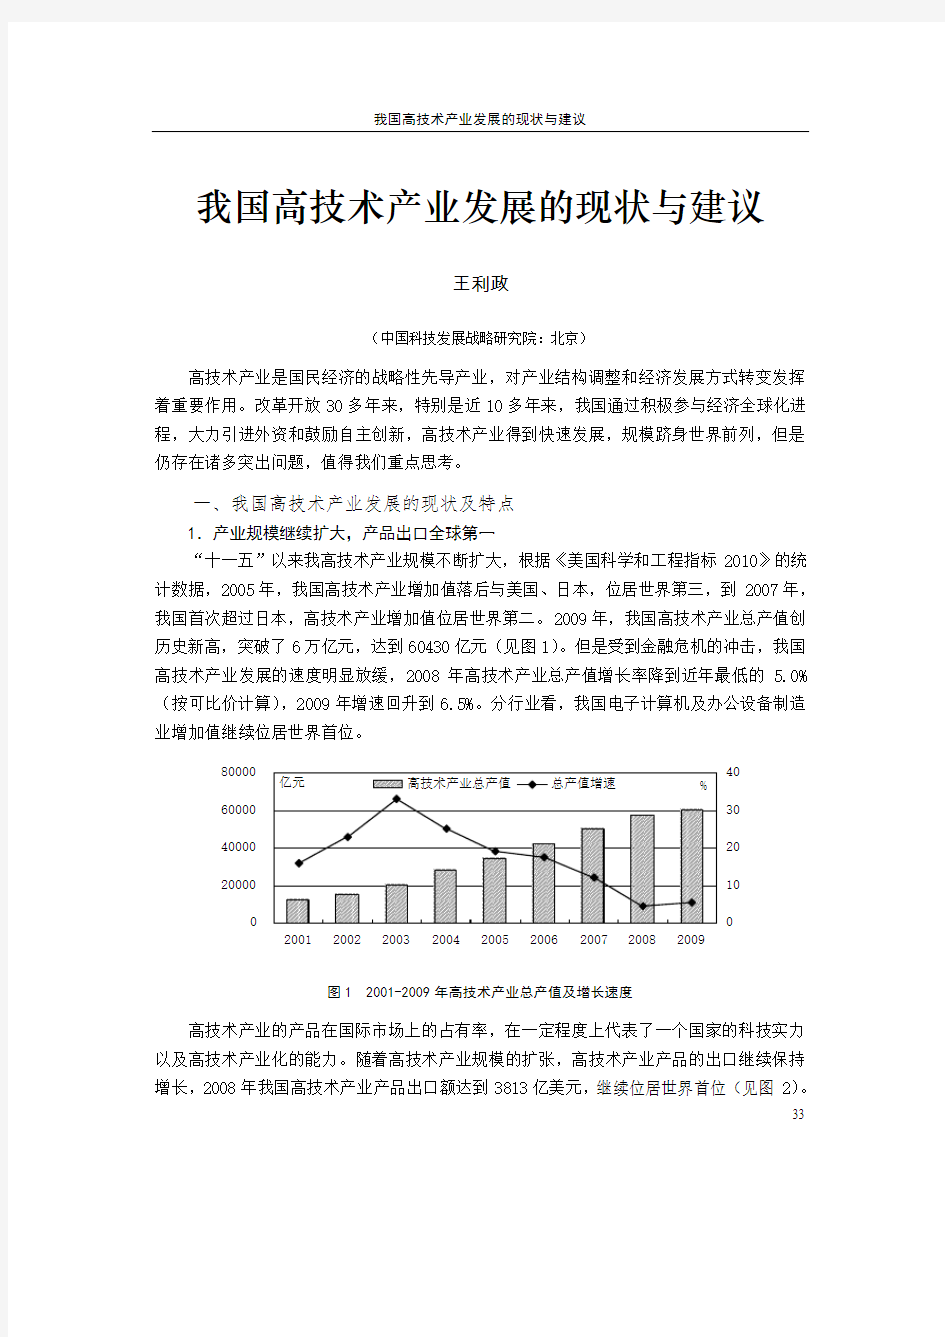 我国高技术产业发展的现状与建议-中国科技统计